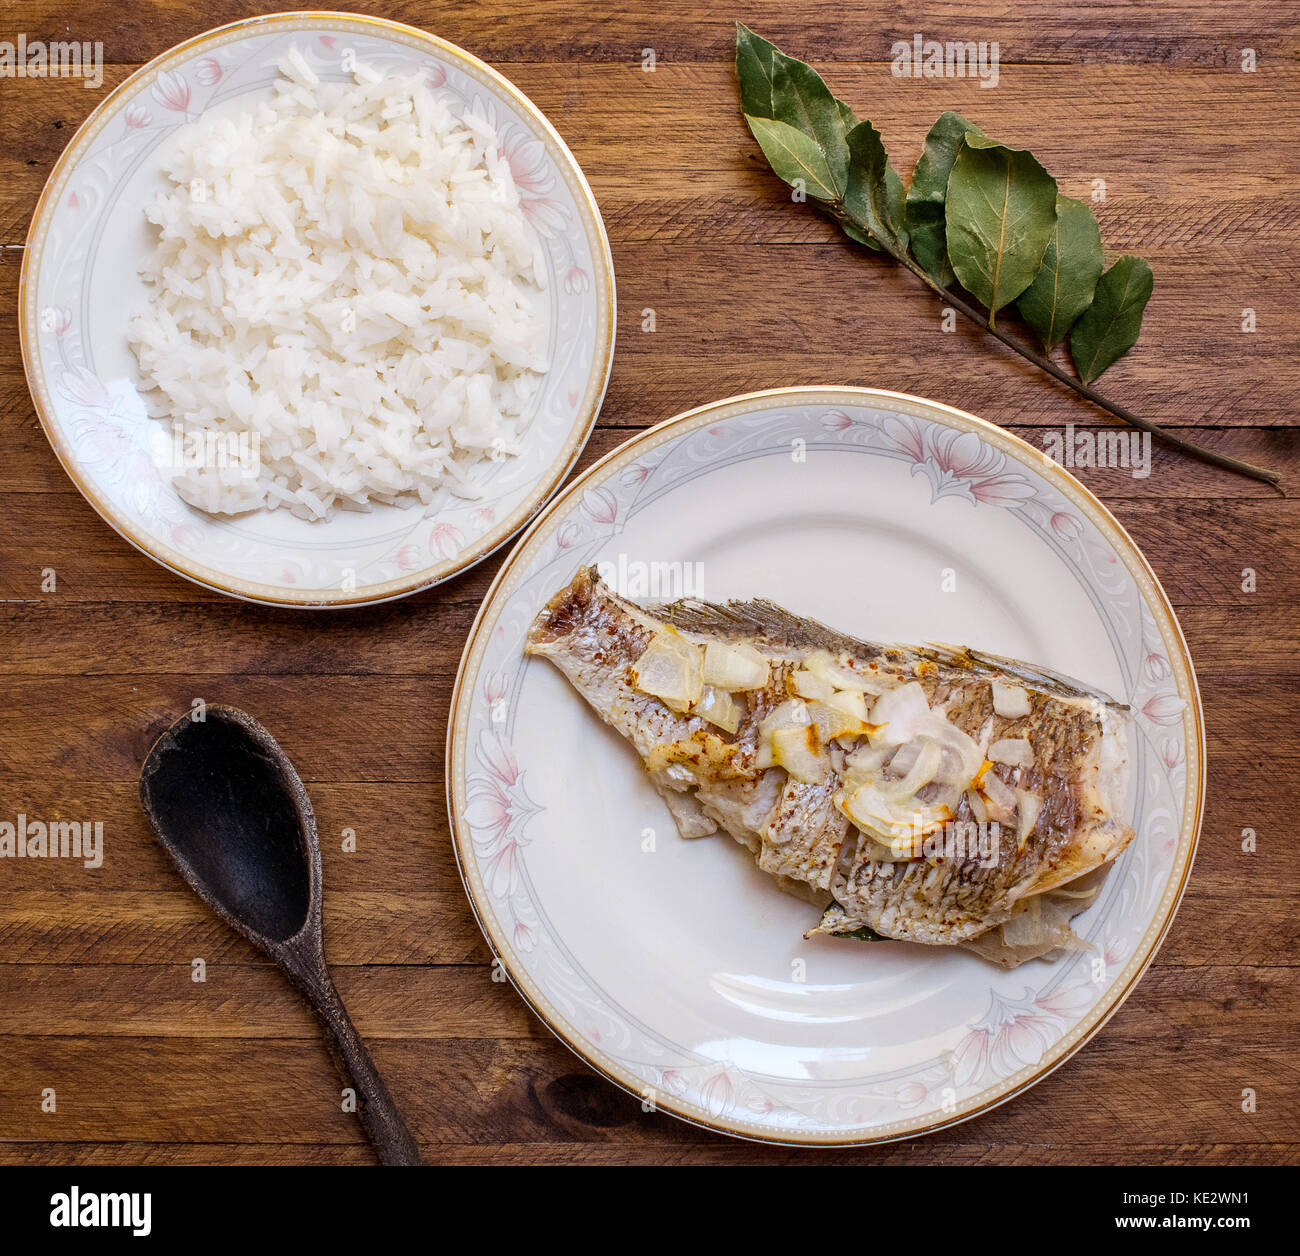 Le poisson entier, cuit au four avec ail et oignon tranché sur le dessus, sur une plaque décorative en porcelaine blanche et d'une assiette de riz blanc sur une toile de fond en bois Banque D'Images